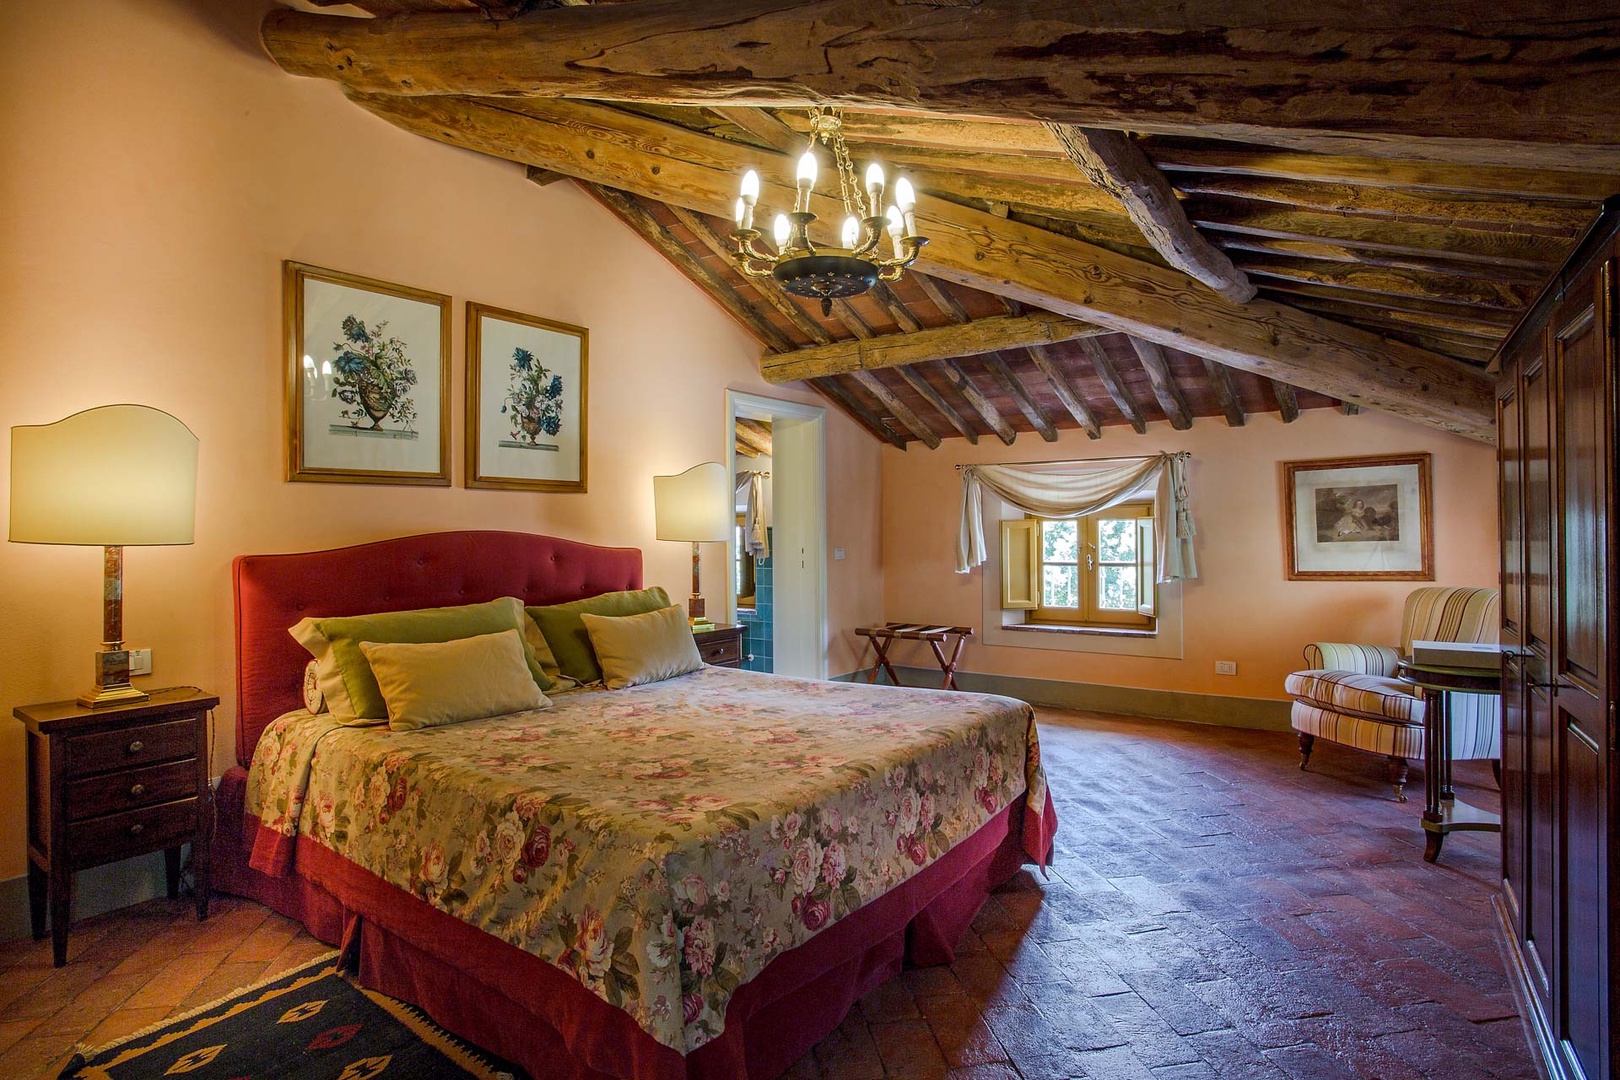 Spacious bedroom with wood beamed ceilings